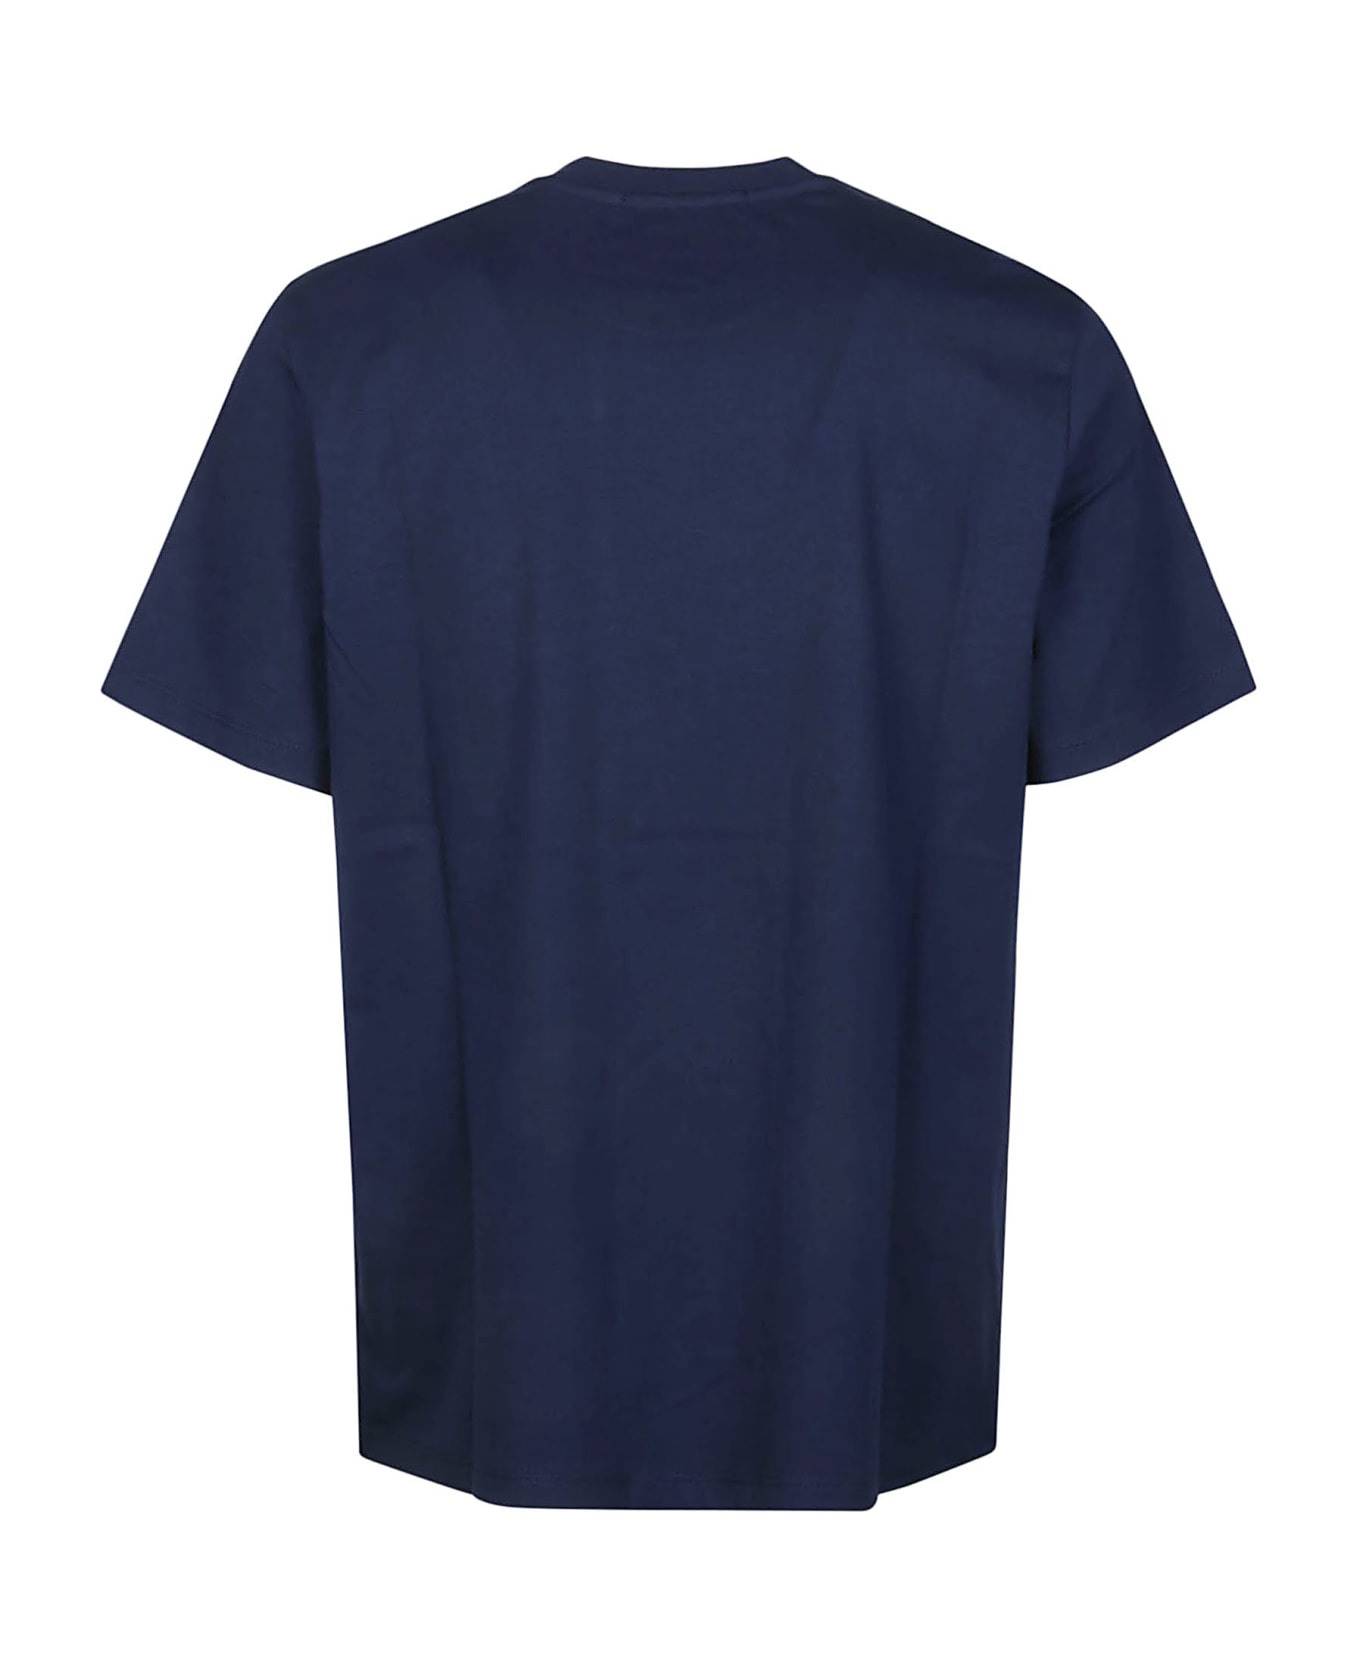 MSGM Logo Print T-shirt - Blue シャツ